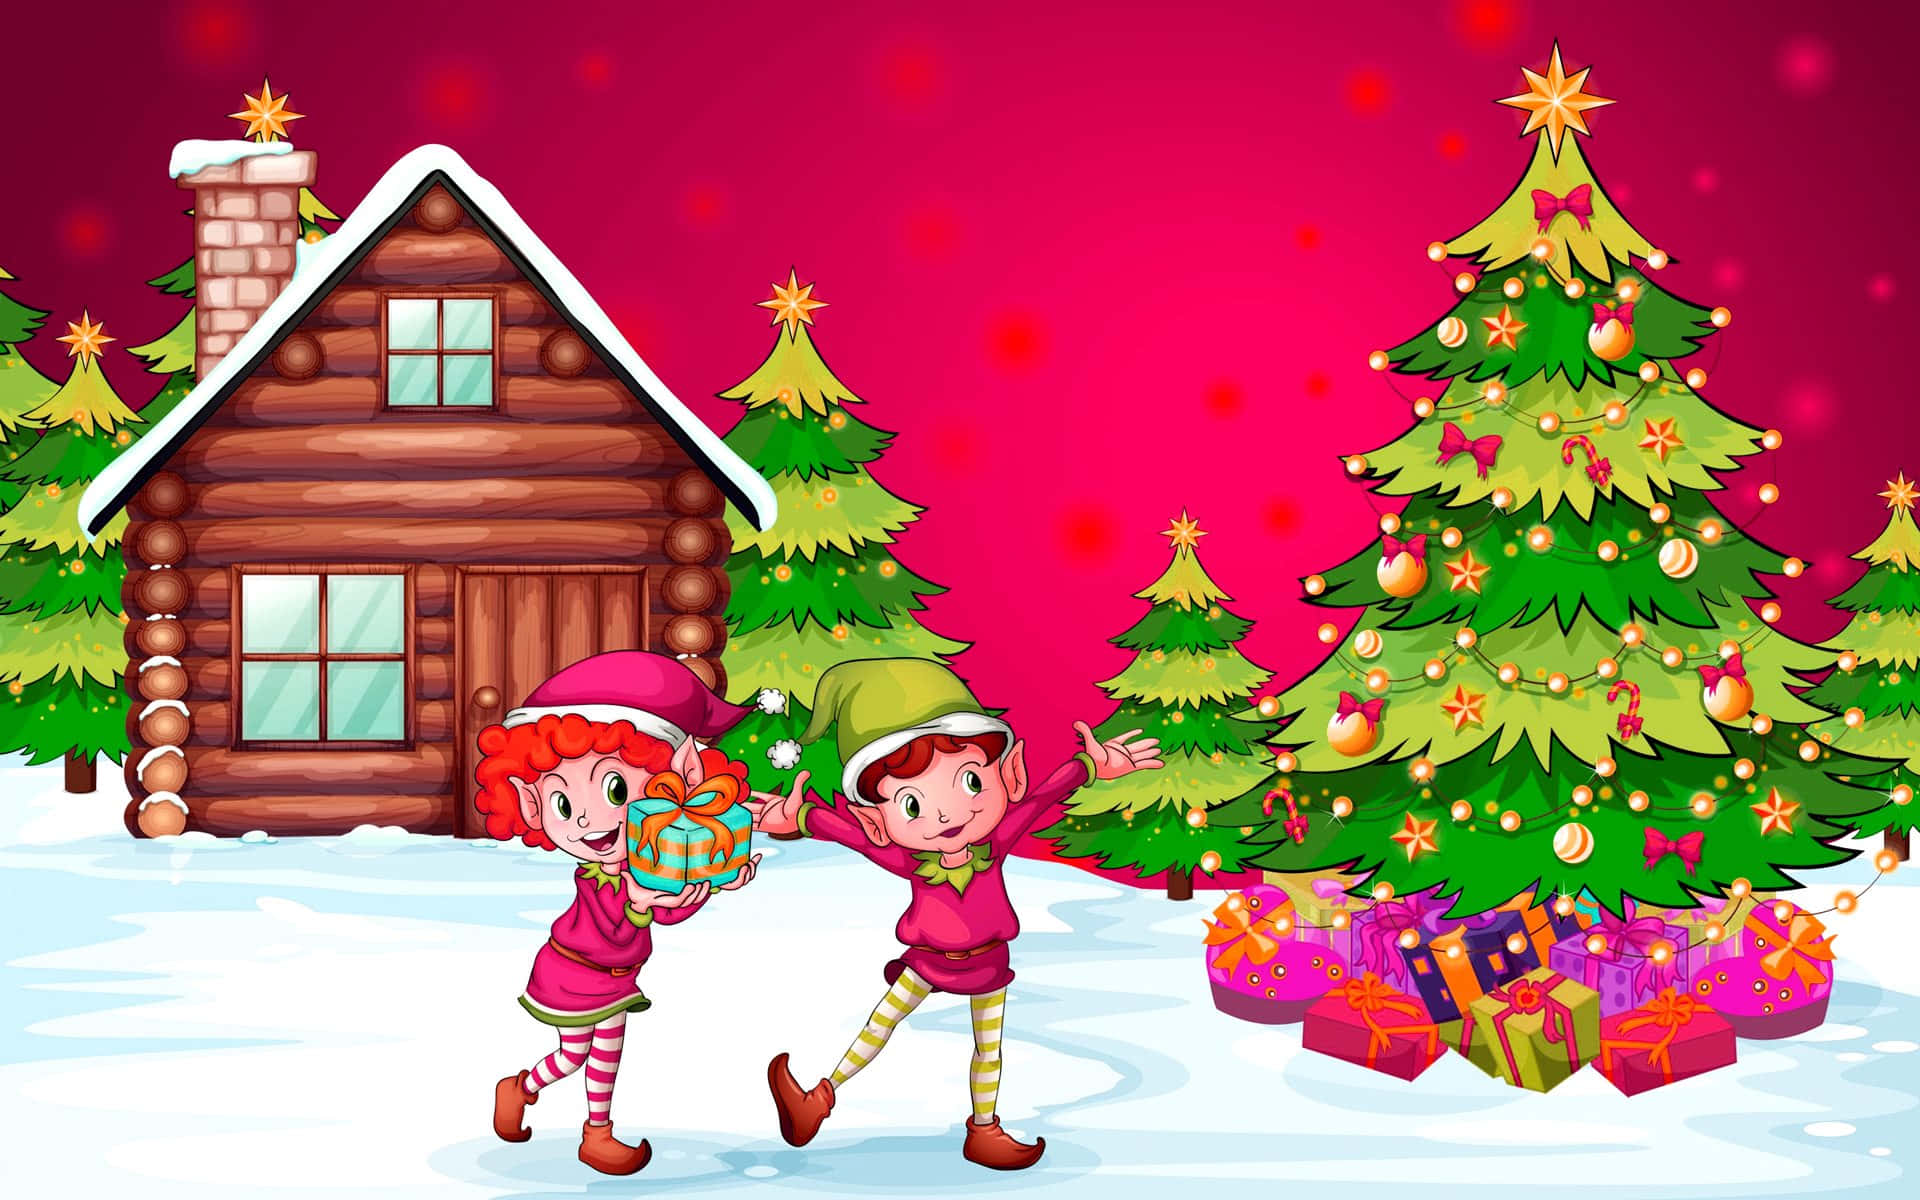 Imagende Navidad De Dibujos Animados Con Elfos Felices Y Un Árbol Festivo.